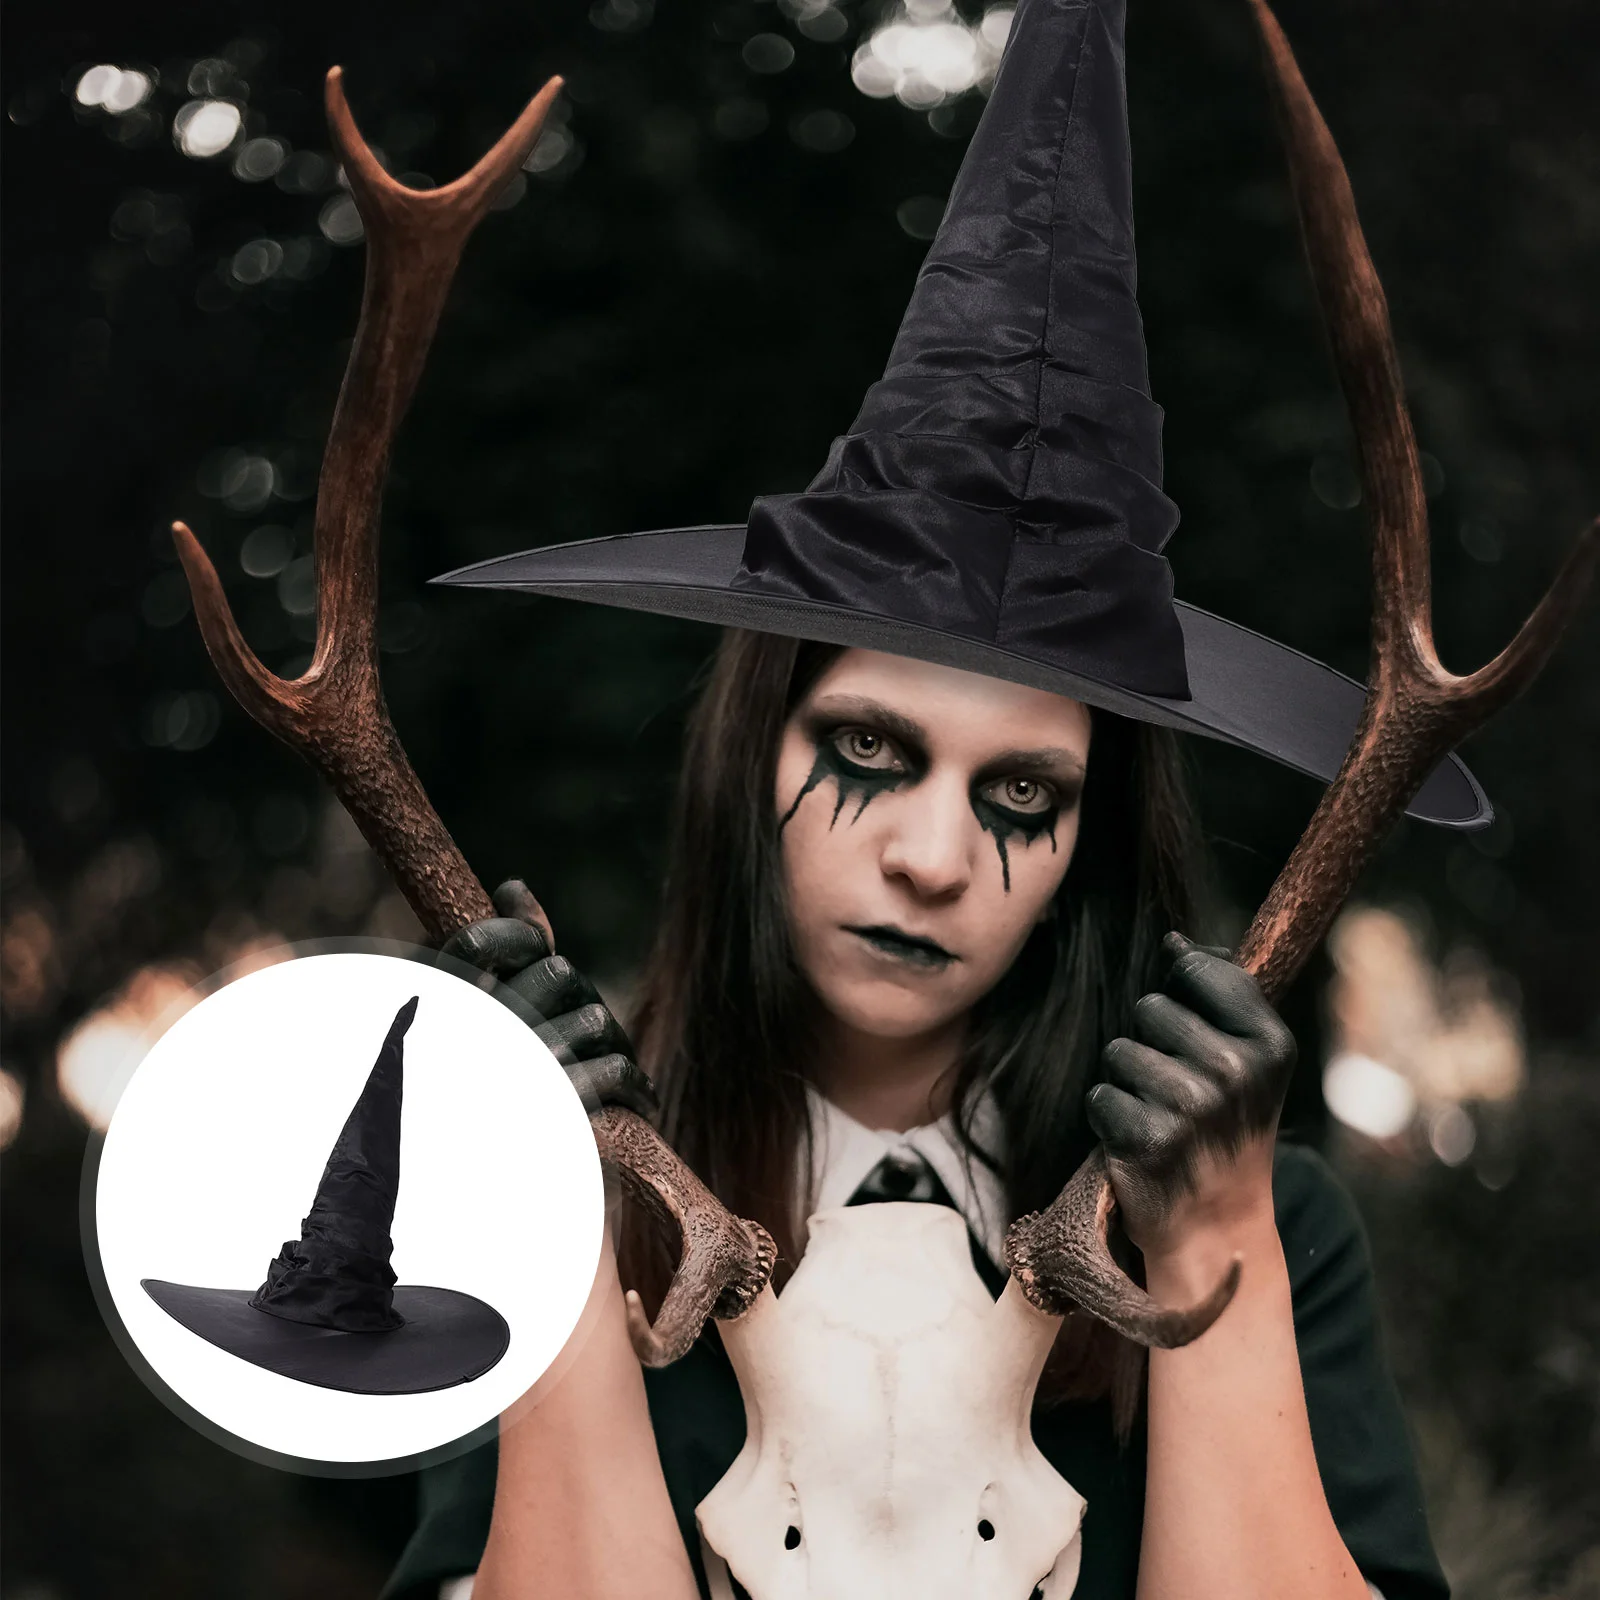 

Плиссированная шляпа ведьмы головные уборы на Хэллоуин стильный головной убор реквизит для ролевых игр декоративная ткань искусственная кожа Интересные детские наряды